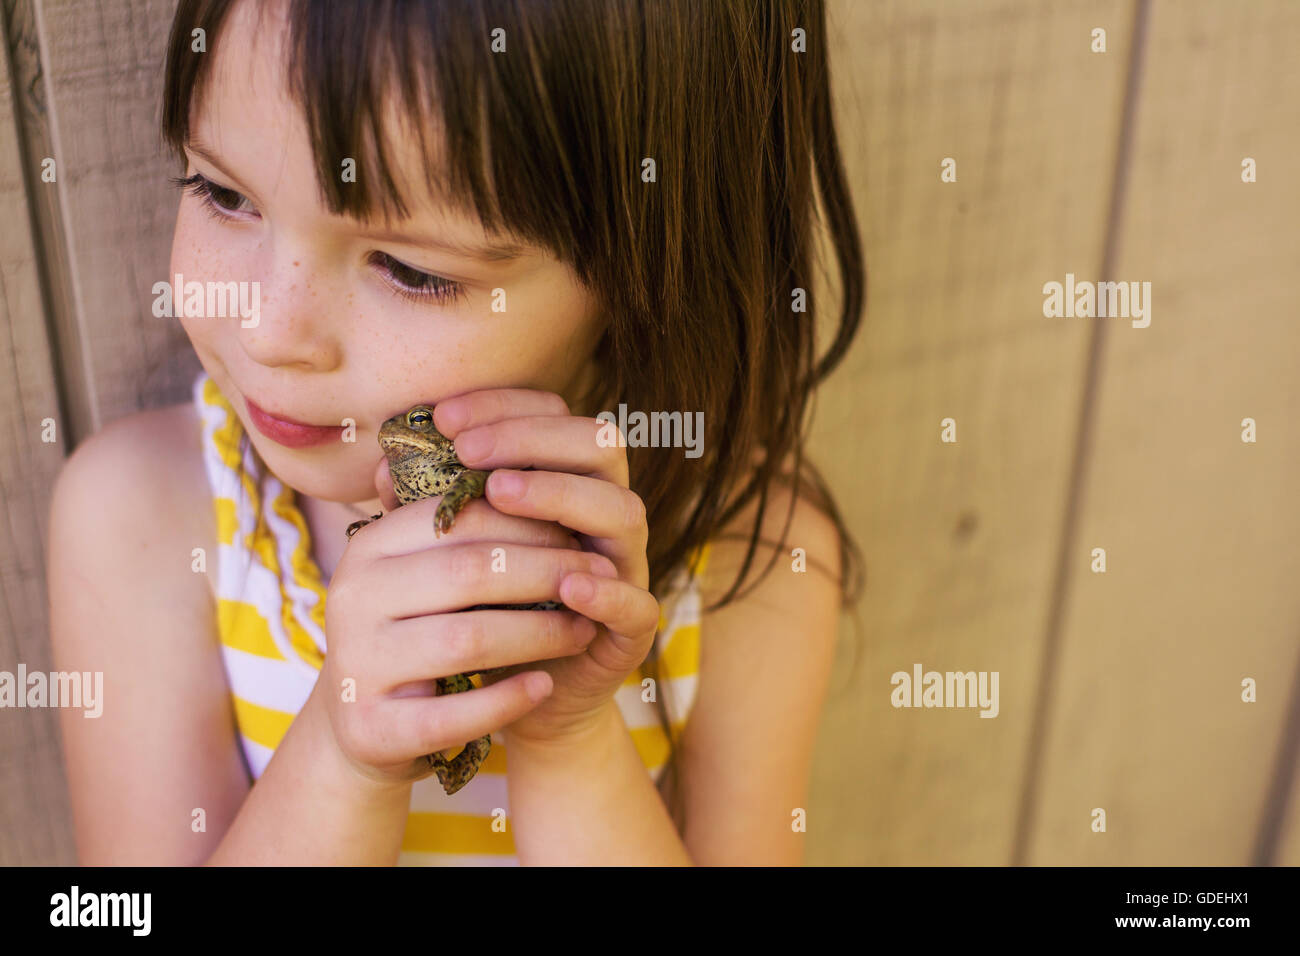 Girl holding une grenouille à côté de son visage Banque D'Images